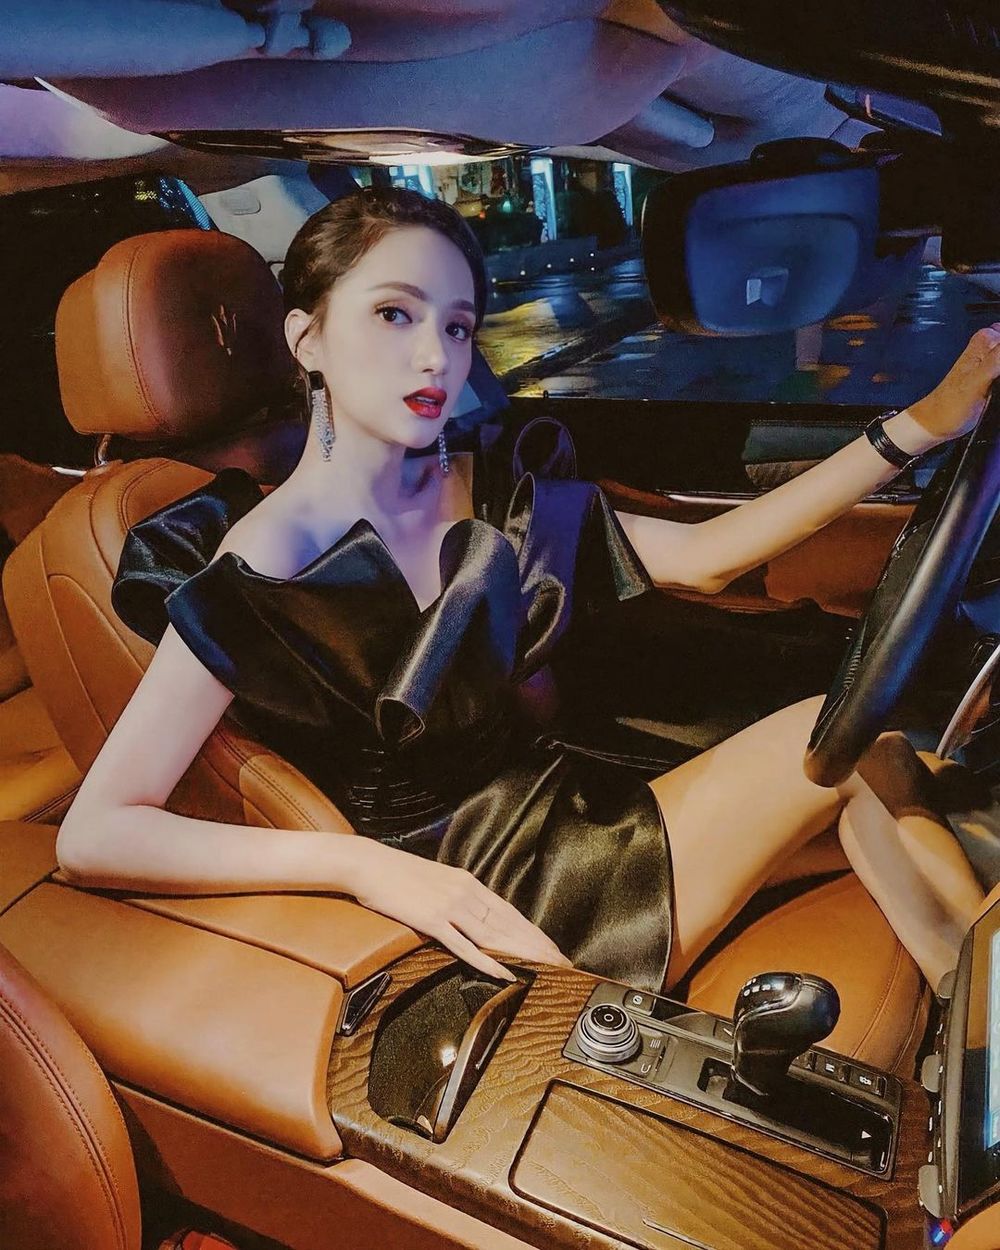 
Hương Giang diện váy đen kiêu kỳ, tạo dáng trong xế hộp sang chảnh. Ảnh: Instagram